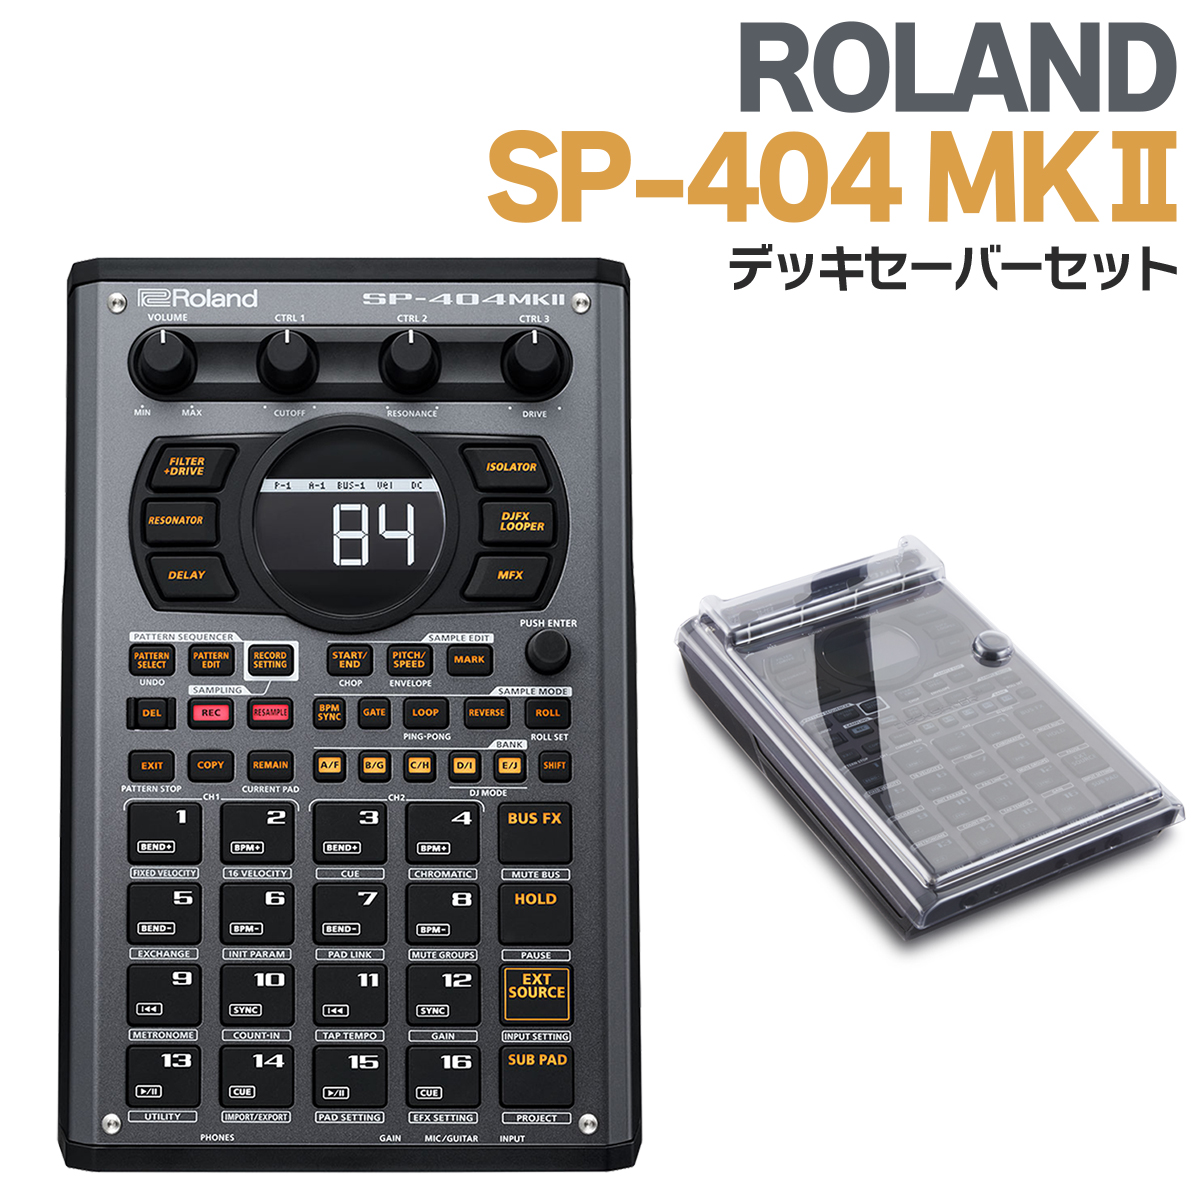 名機 Roland SP-404 SX 持ち運び専用バッグ付き サンプラーサンプリング